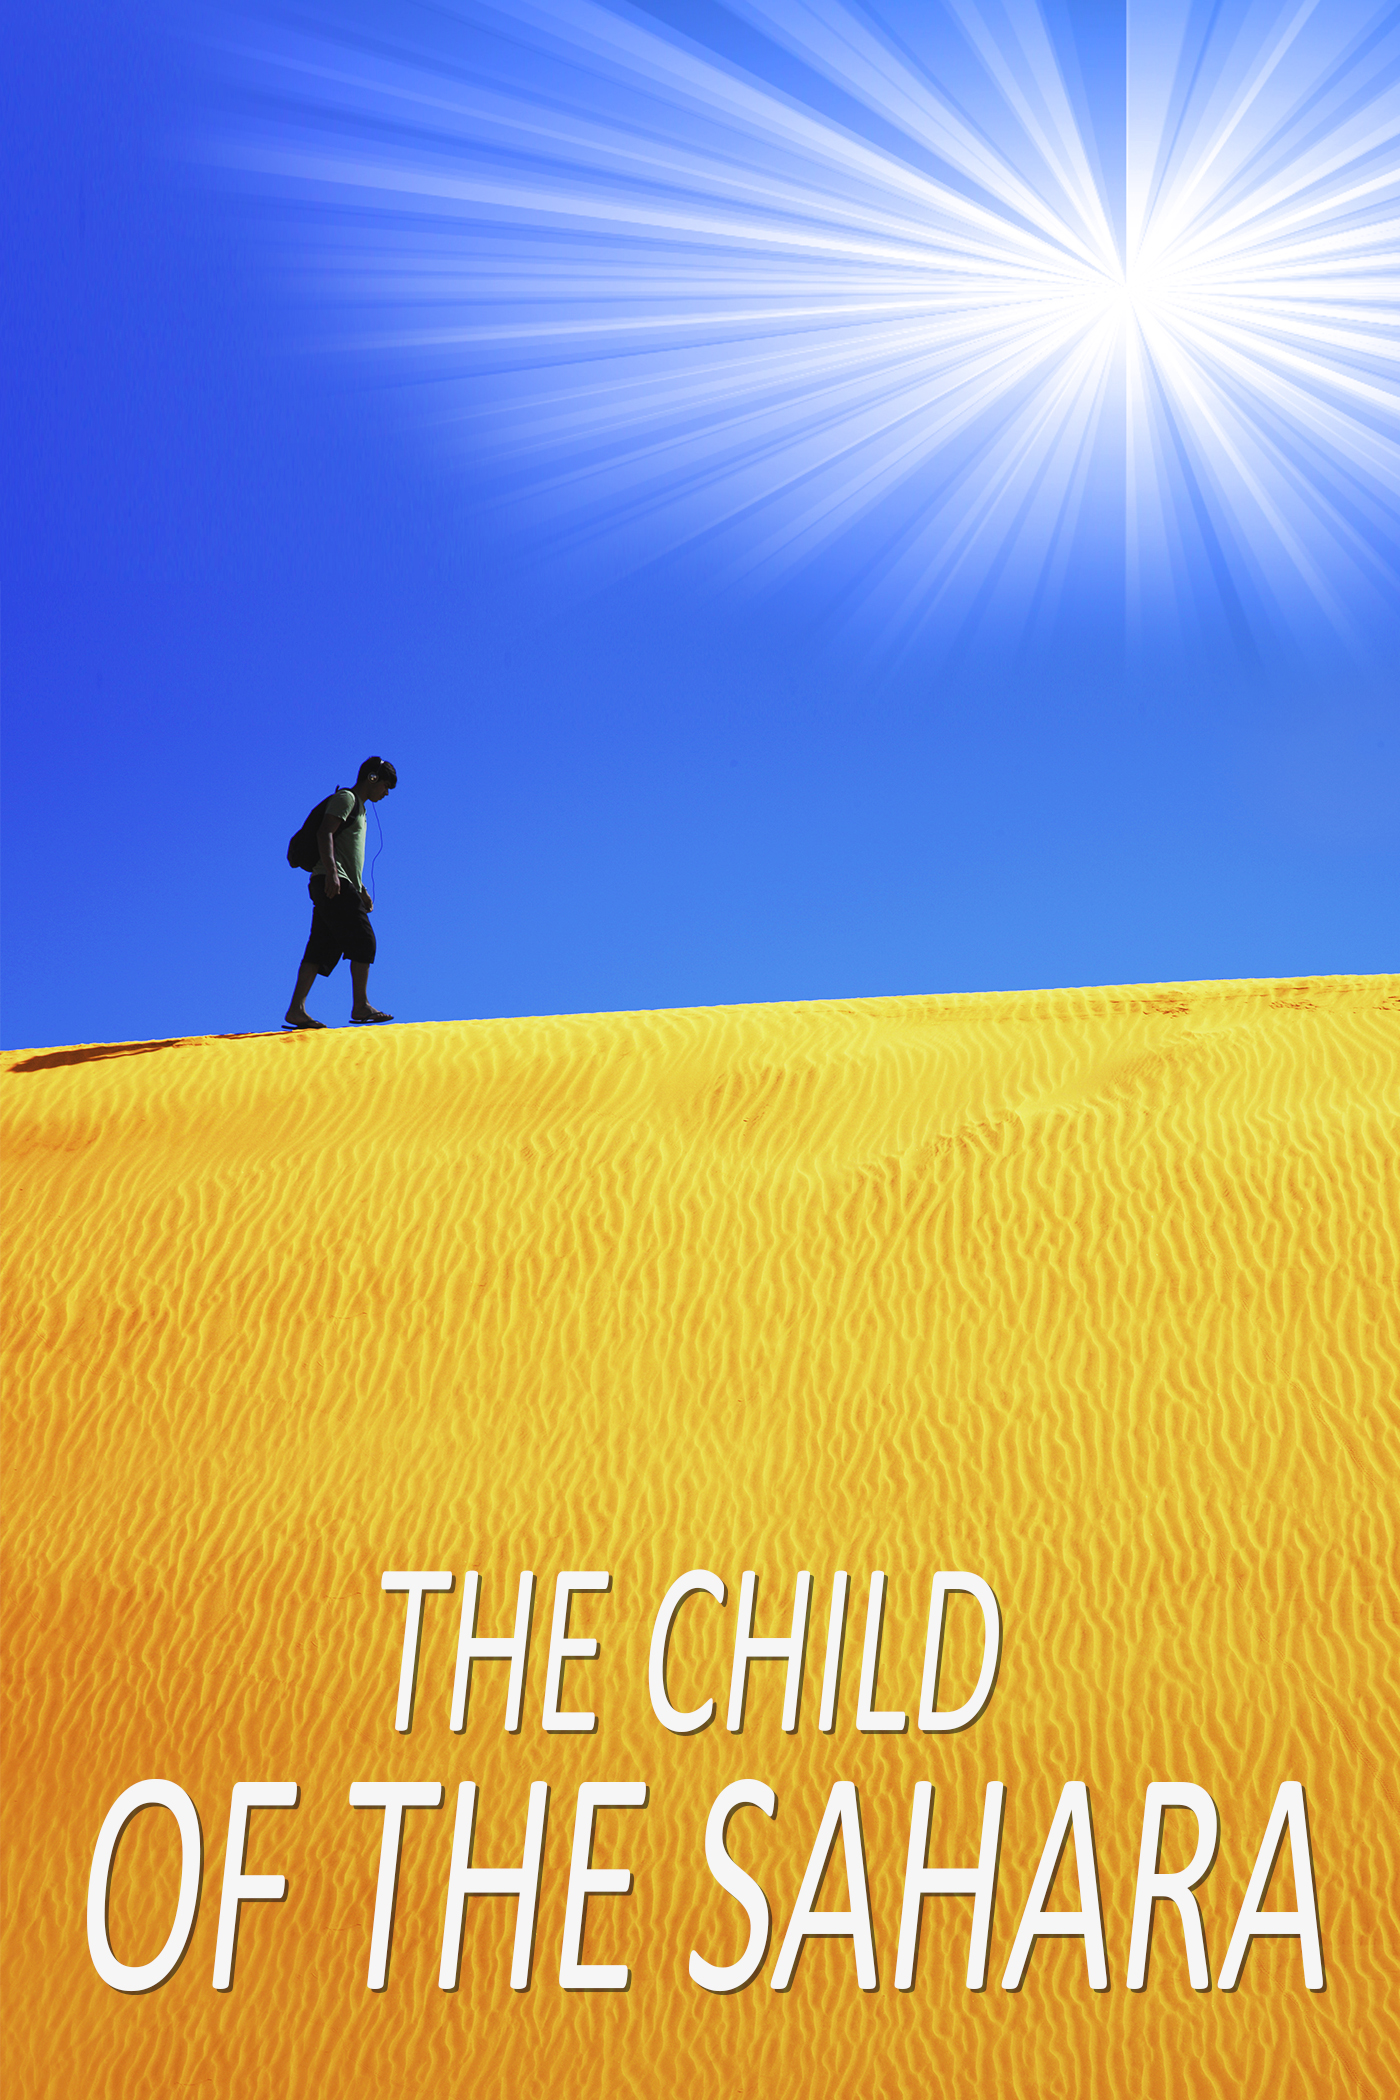 The Child of the Sahara (2020) Screenshot 2